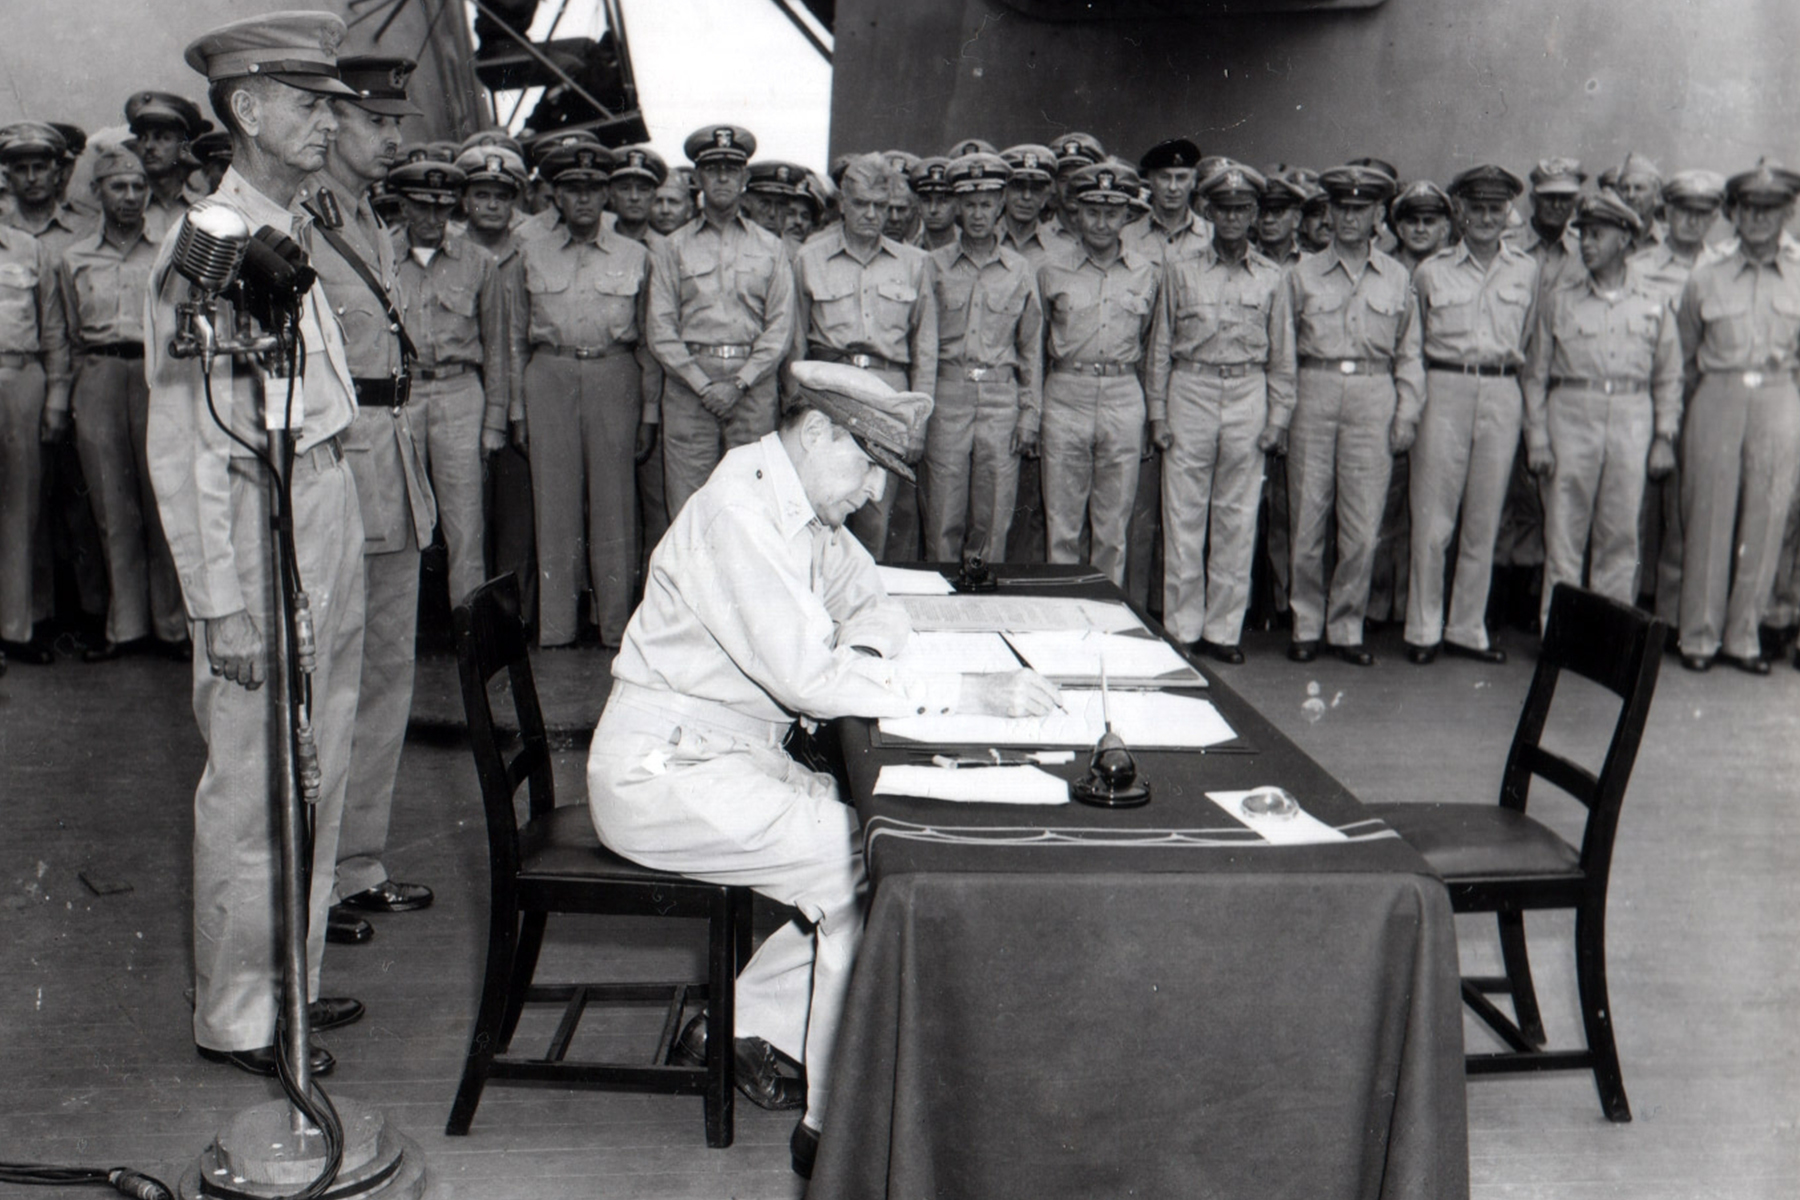 Kapitulační dokumenty byly podepsány přímo na palubě lodi.